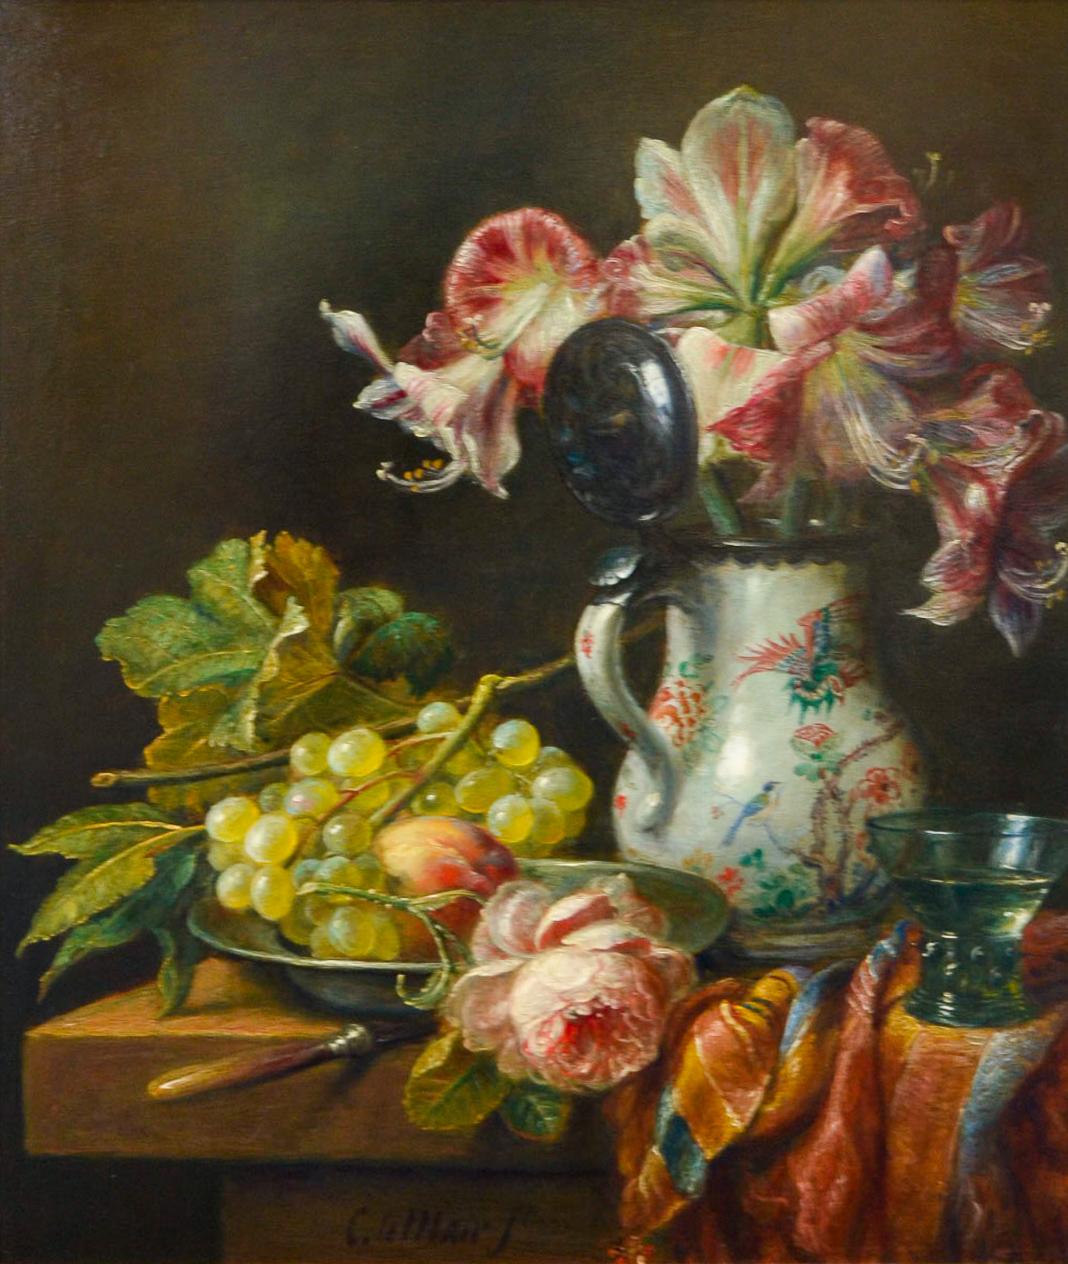 Pichet de Chine, raisins et fleurs - Peinture de nature morte de style classique néerlandais